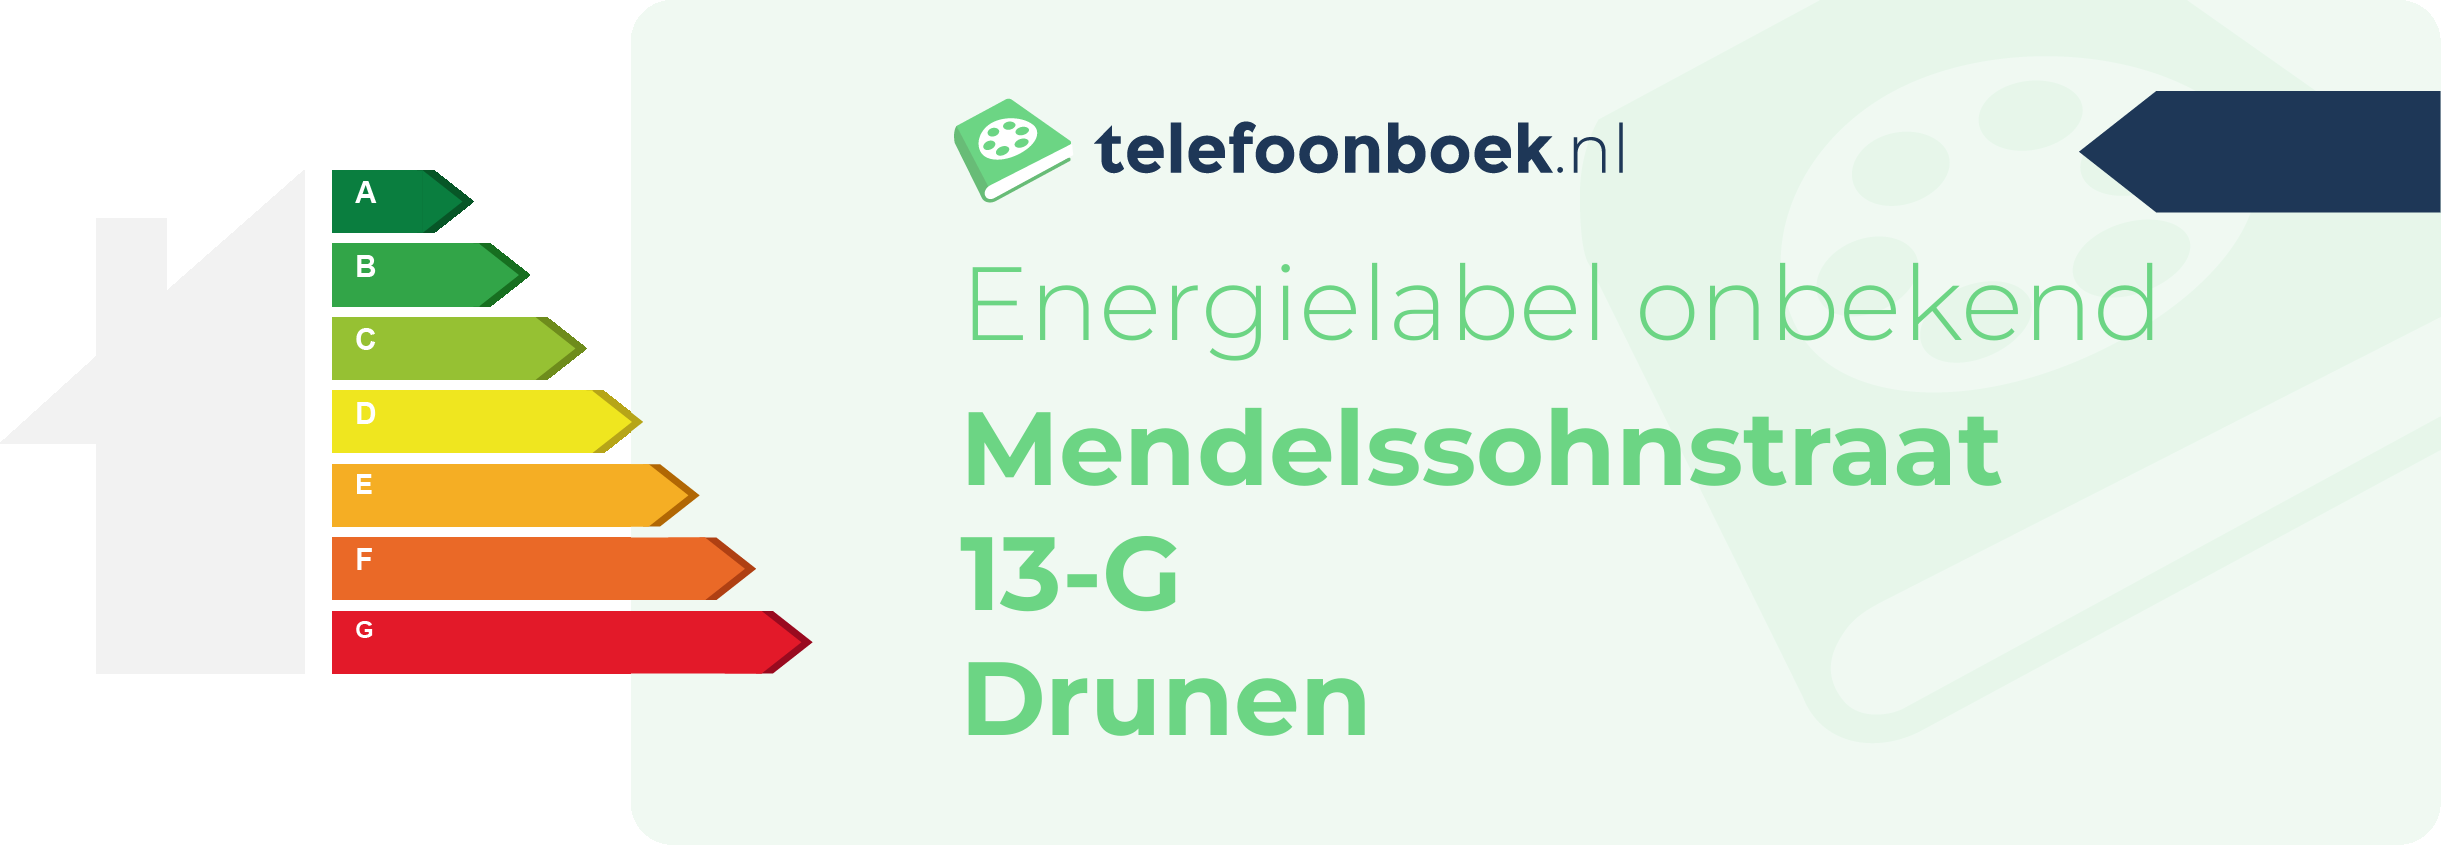 Energielabel Mendelssohnstraat 13-G Drunen